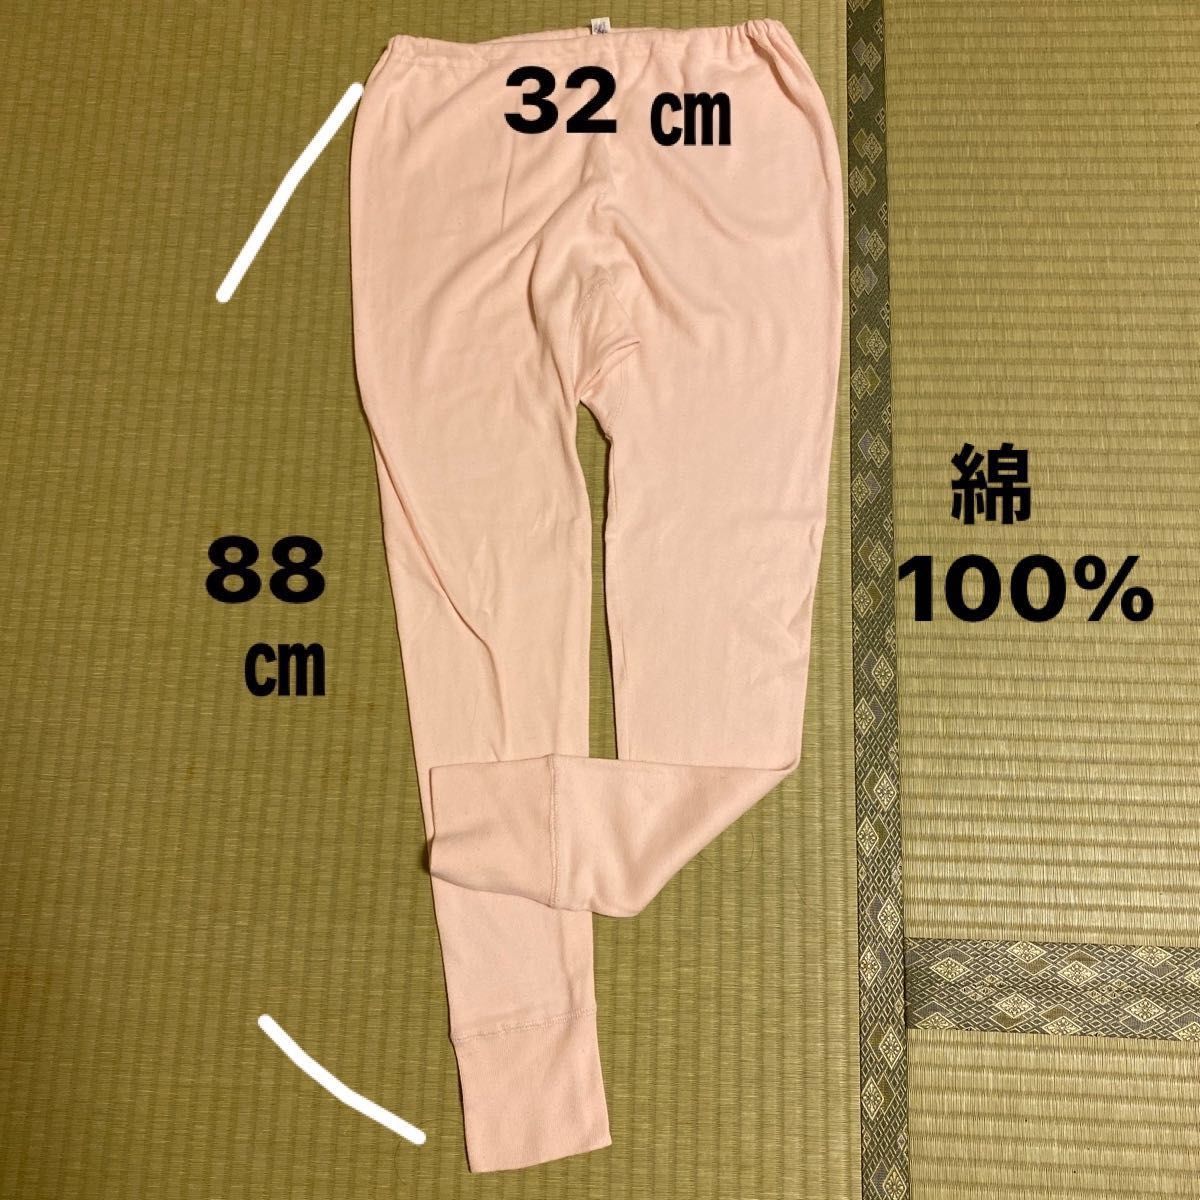 ズボン下ももひき２枚組①ヒップ87〜95綿100% サイズ表記Mですが、大きめ②綿100%    